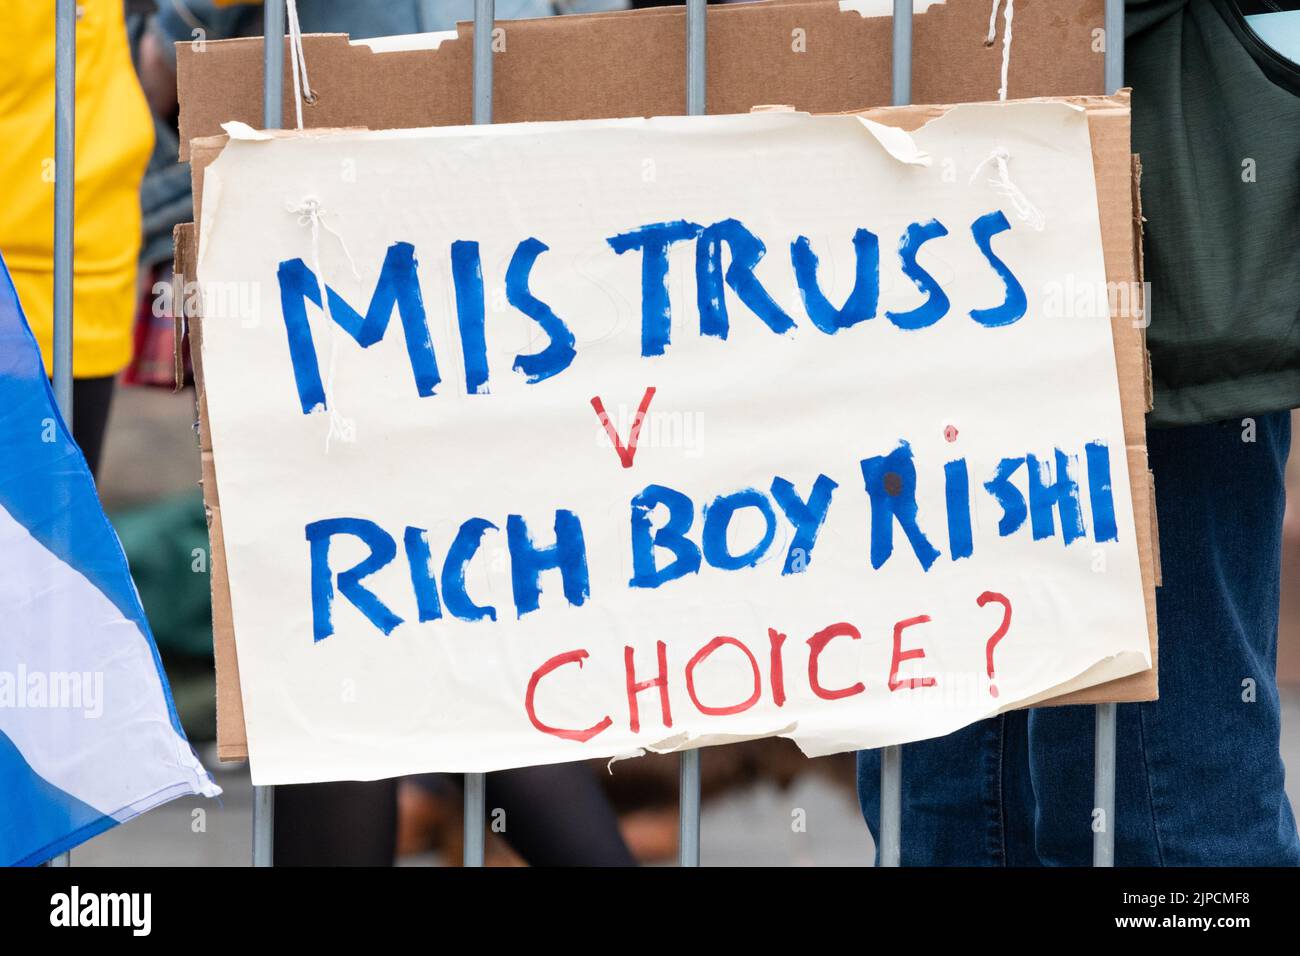 Les manifestants se bannière en dehors des détestations électorales des dirigeants conservateurs à Perth, en Écosse - mis Truss v Rich Boy Rishi Choice? 16 août 2022 Banque D'Images